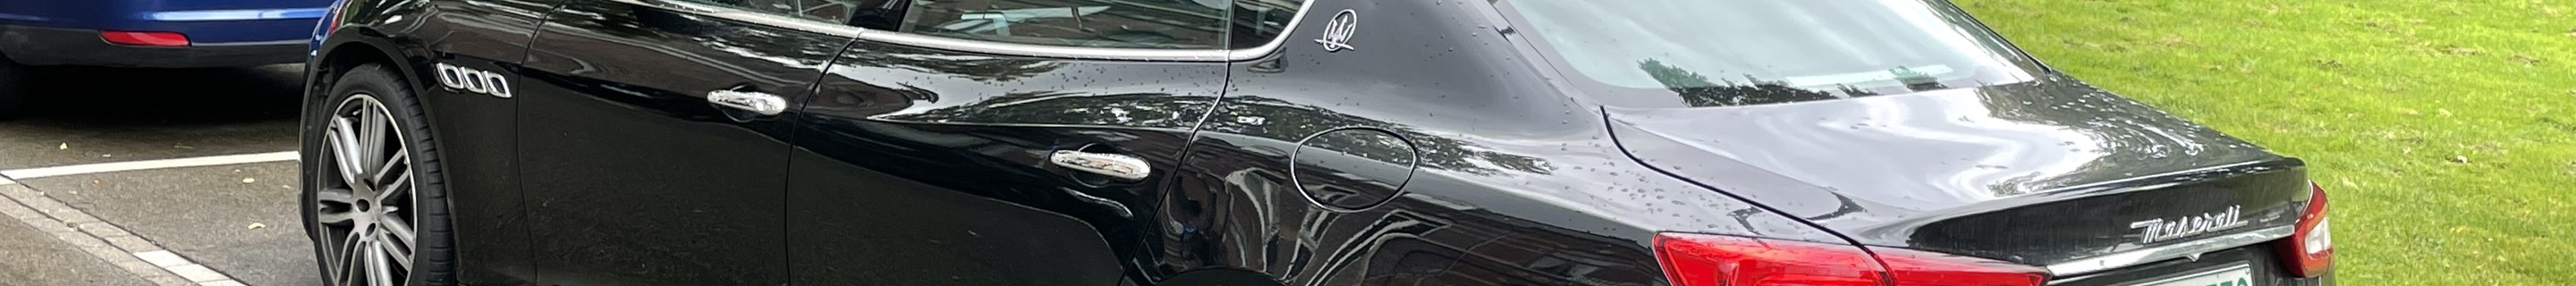 Maserati Quattroporte Diesel 2013